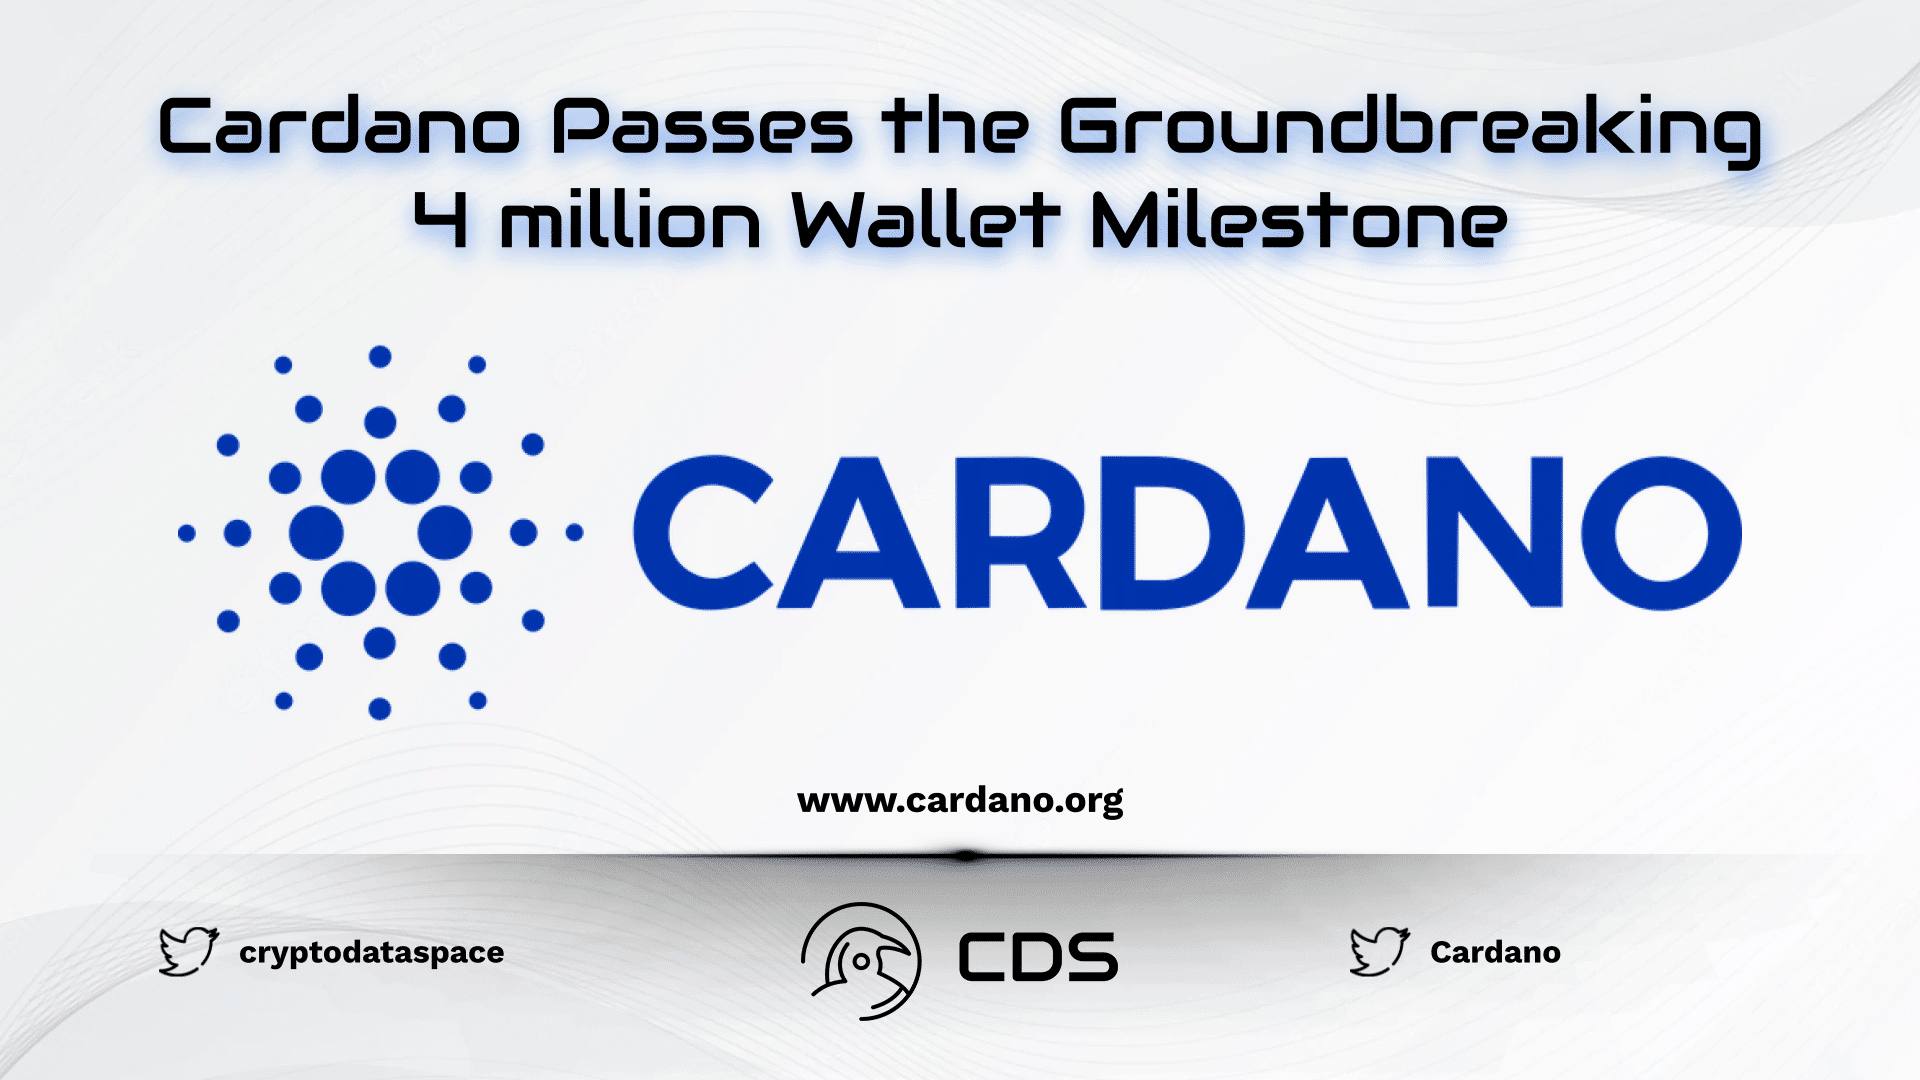 Cardano Passes the Groundbreaking 4 million Wallet Milestone